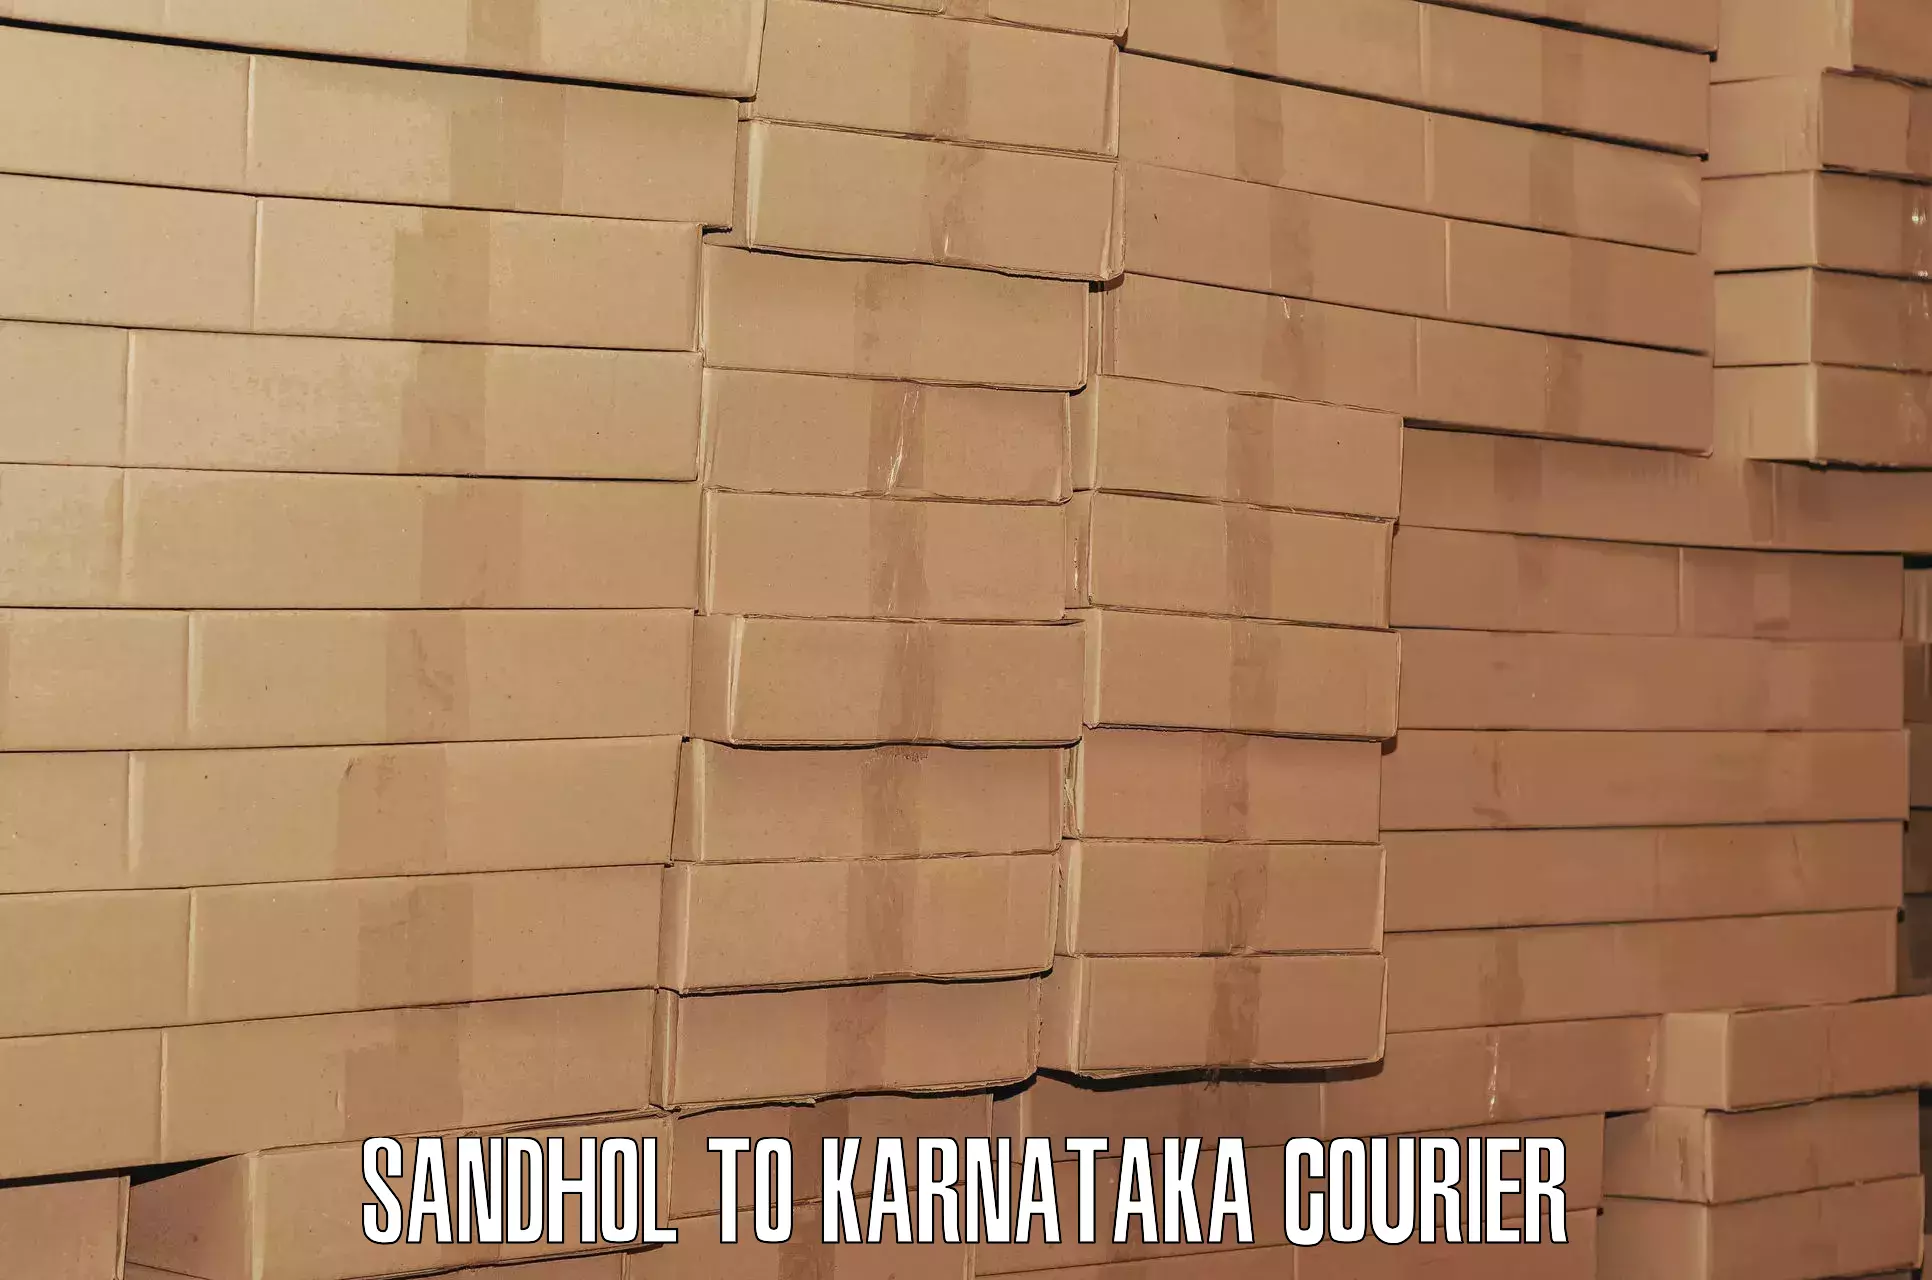 Express luggage delivery Sandhol to Karnataka